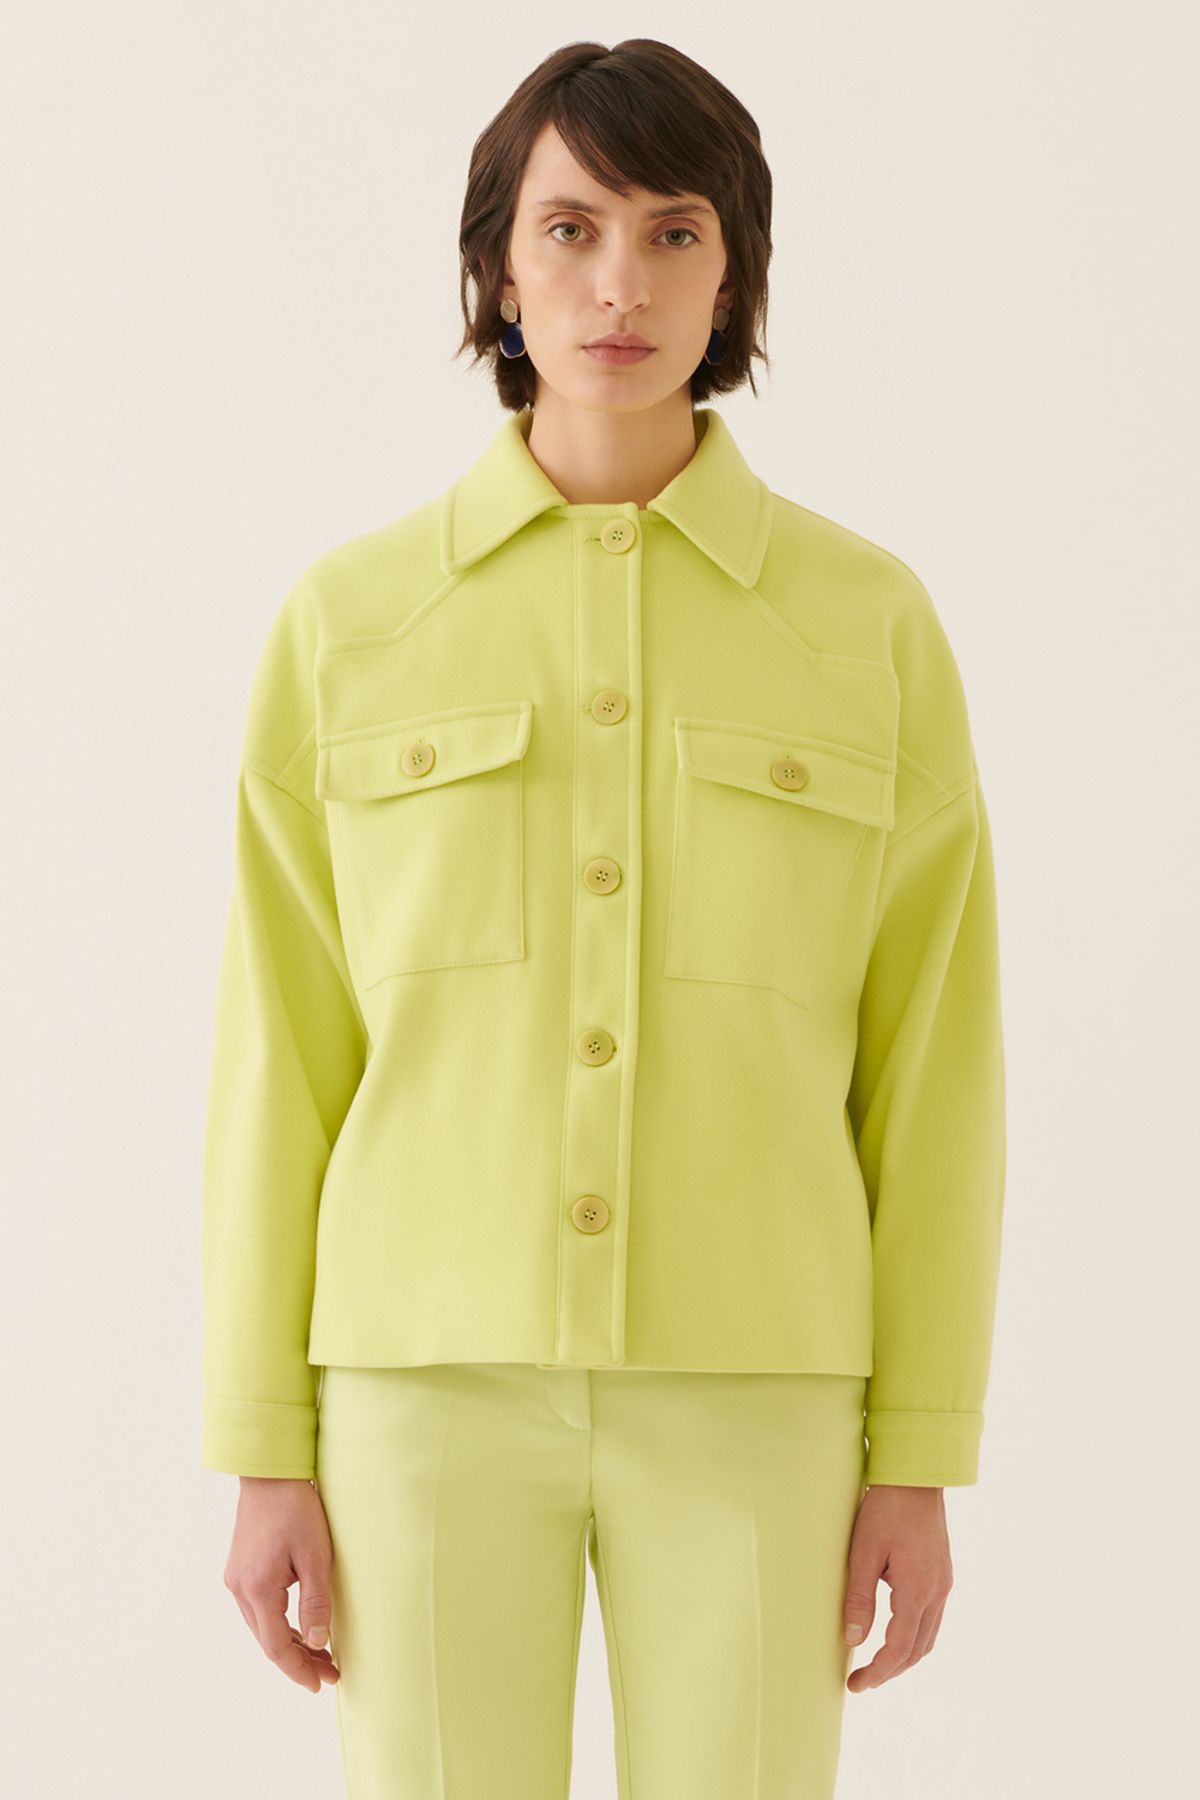 Perspective Anton Rahat Kalıp Gömlek Yaka Standart Boy Misket Limonu Renk Kadın Ceket